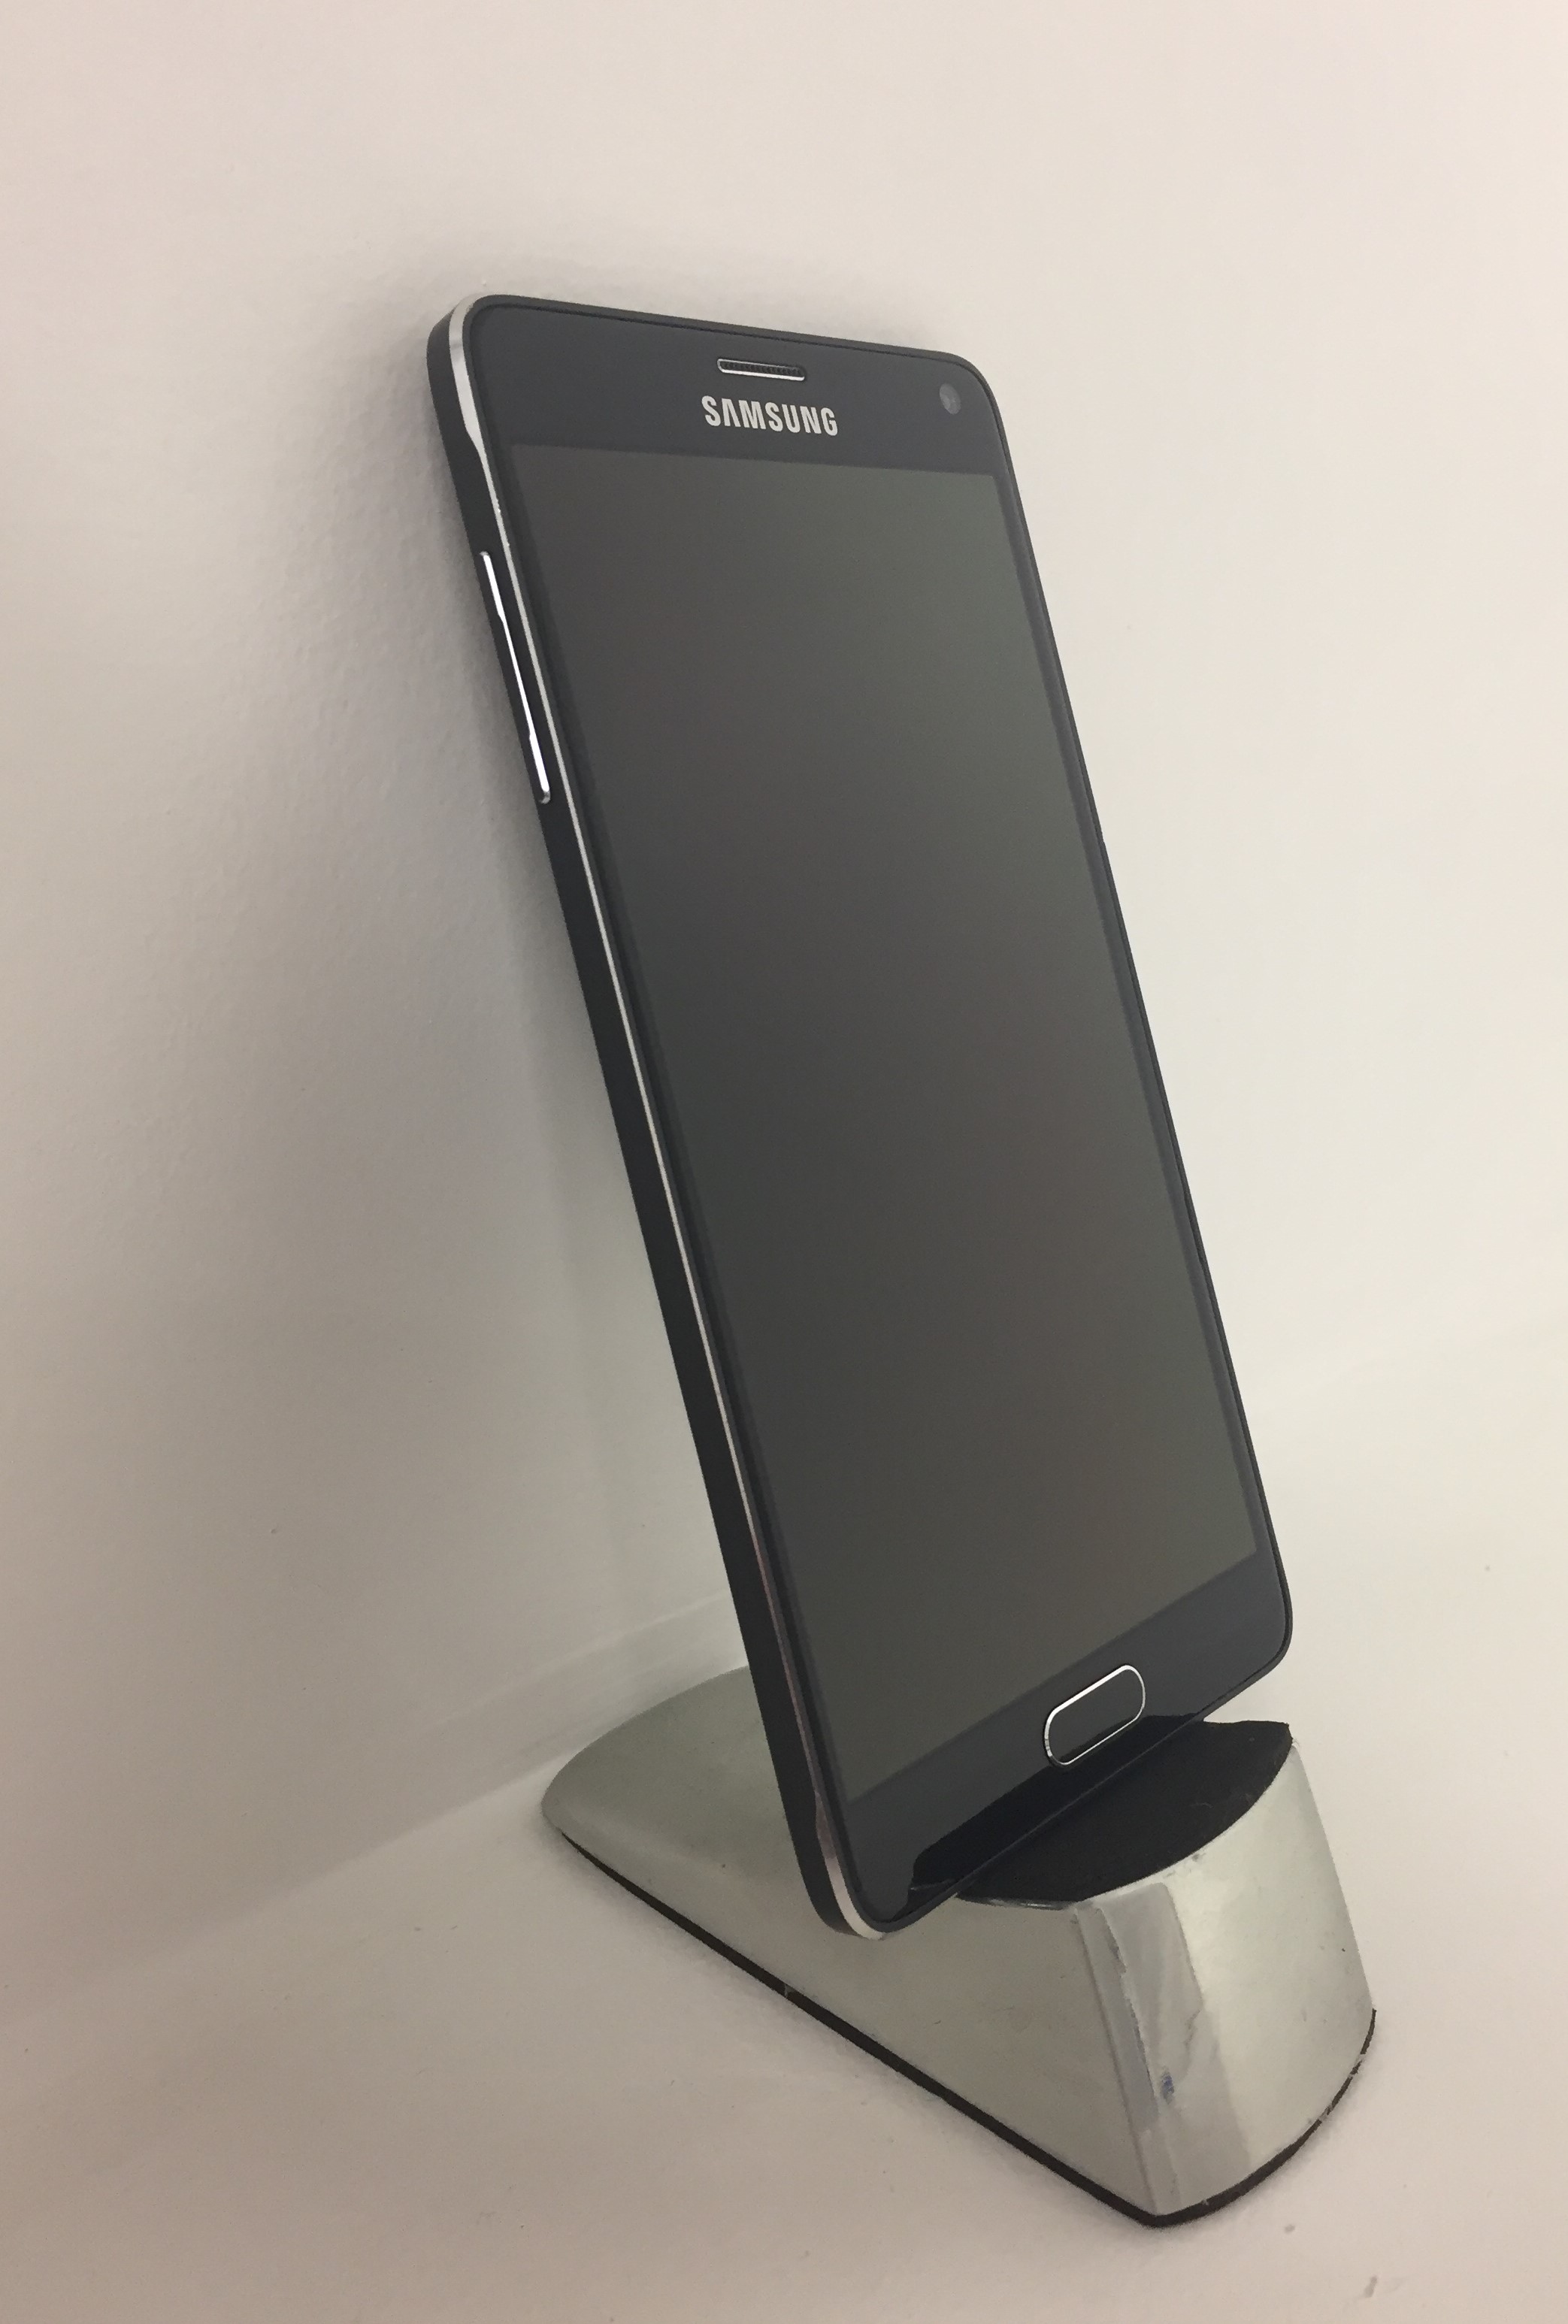 Samsung Galaxy Note 4 No 2